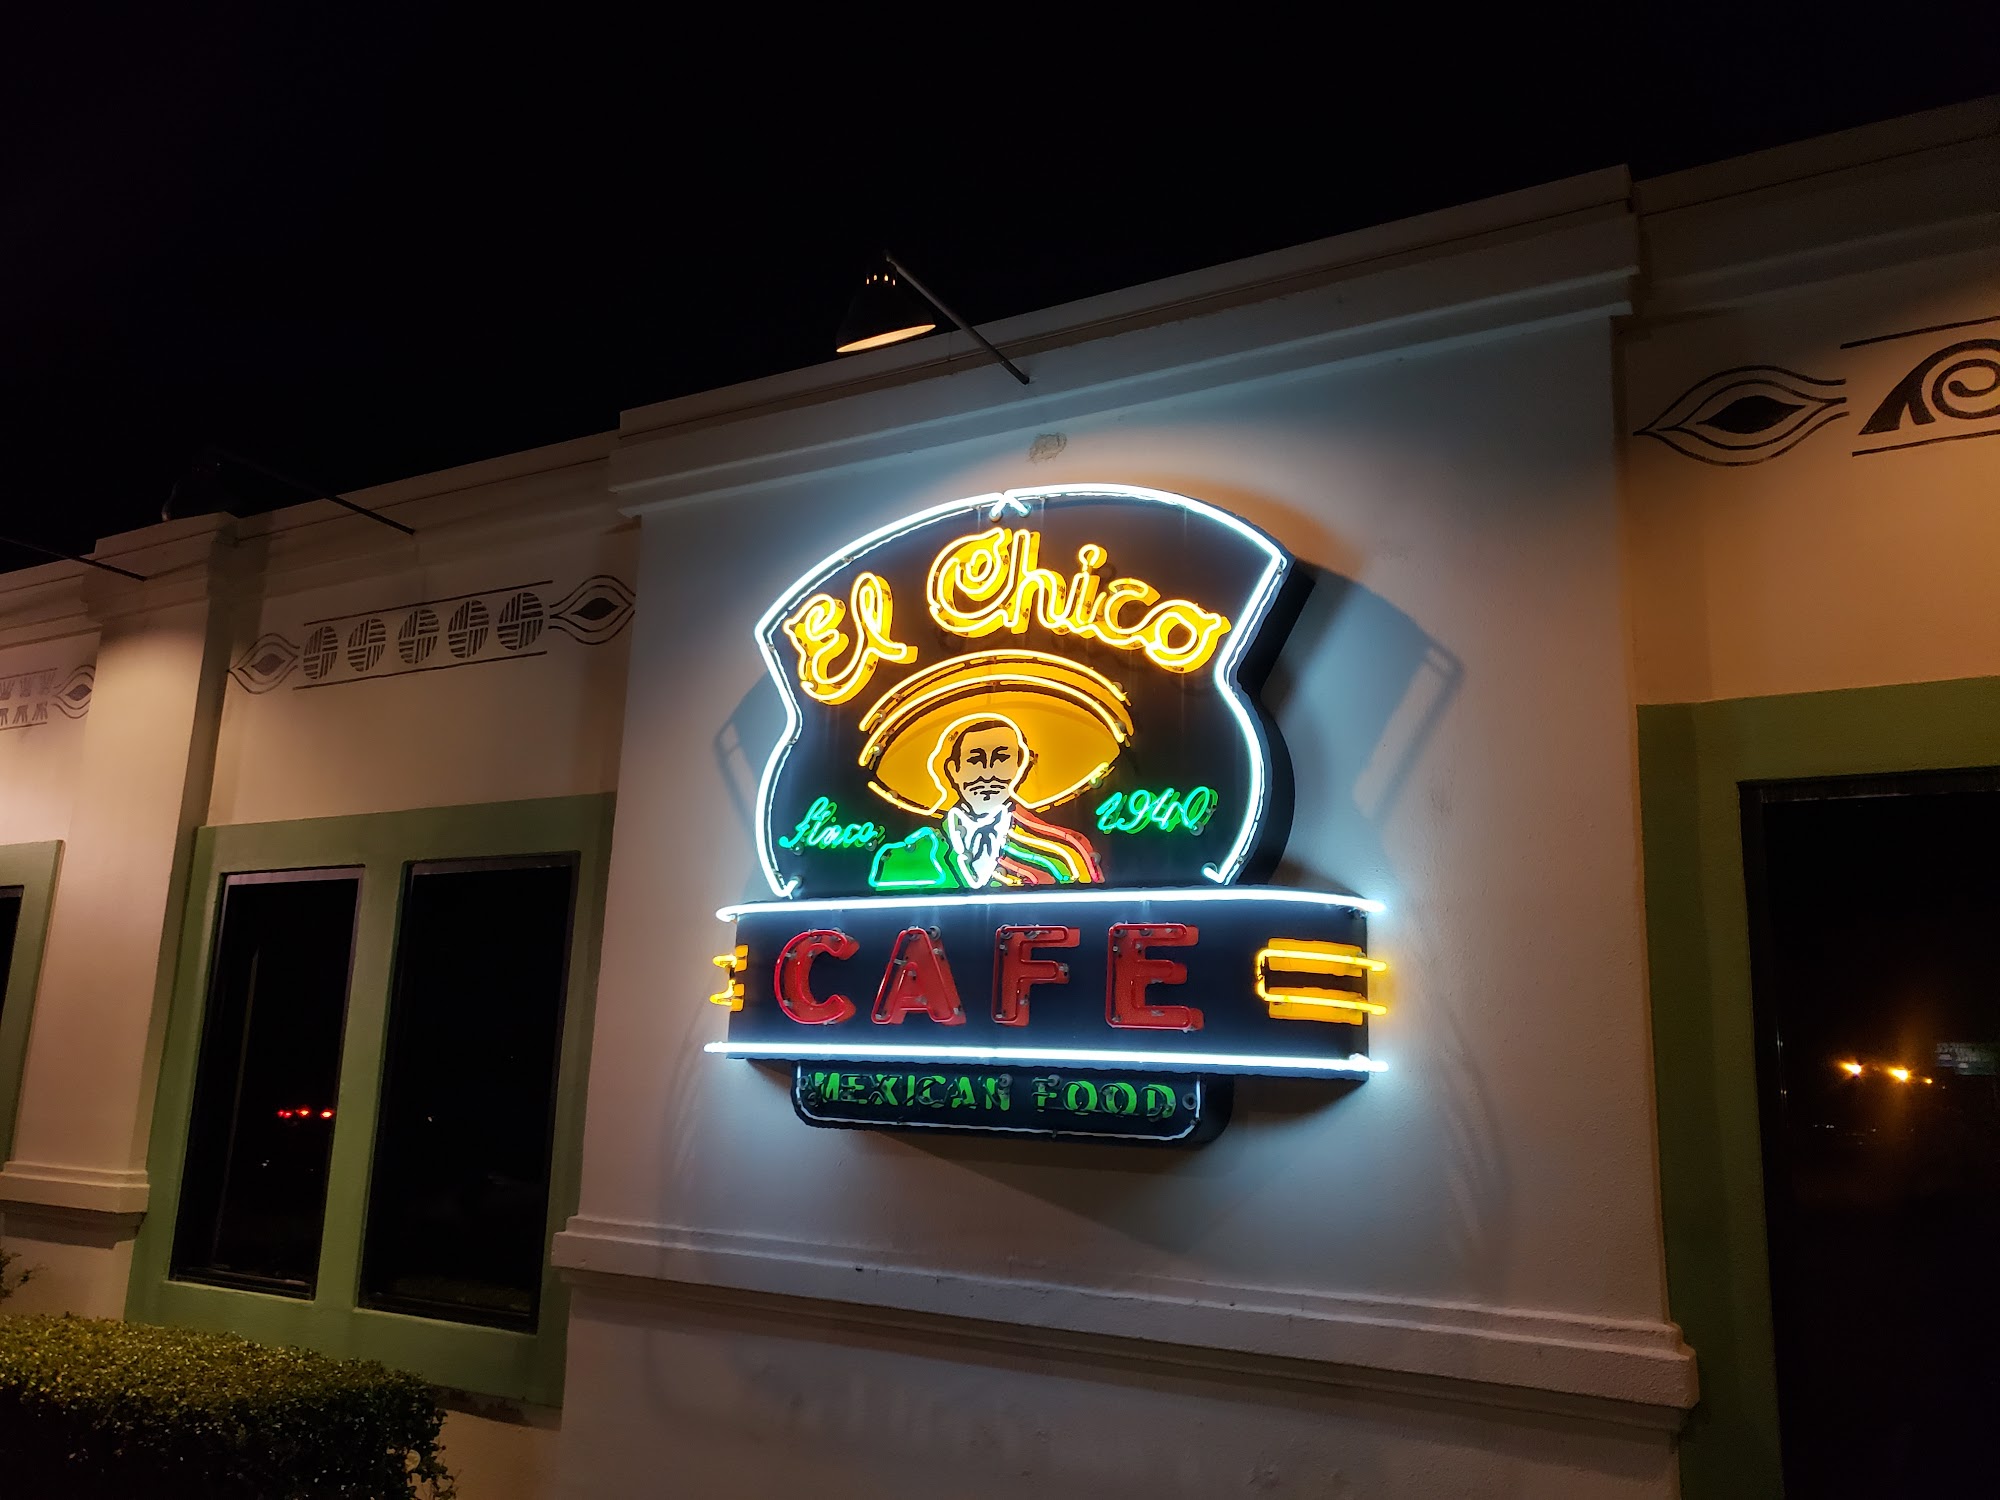 El Chico Cafe